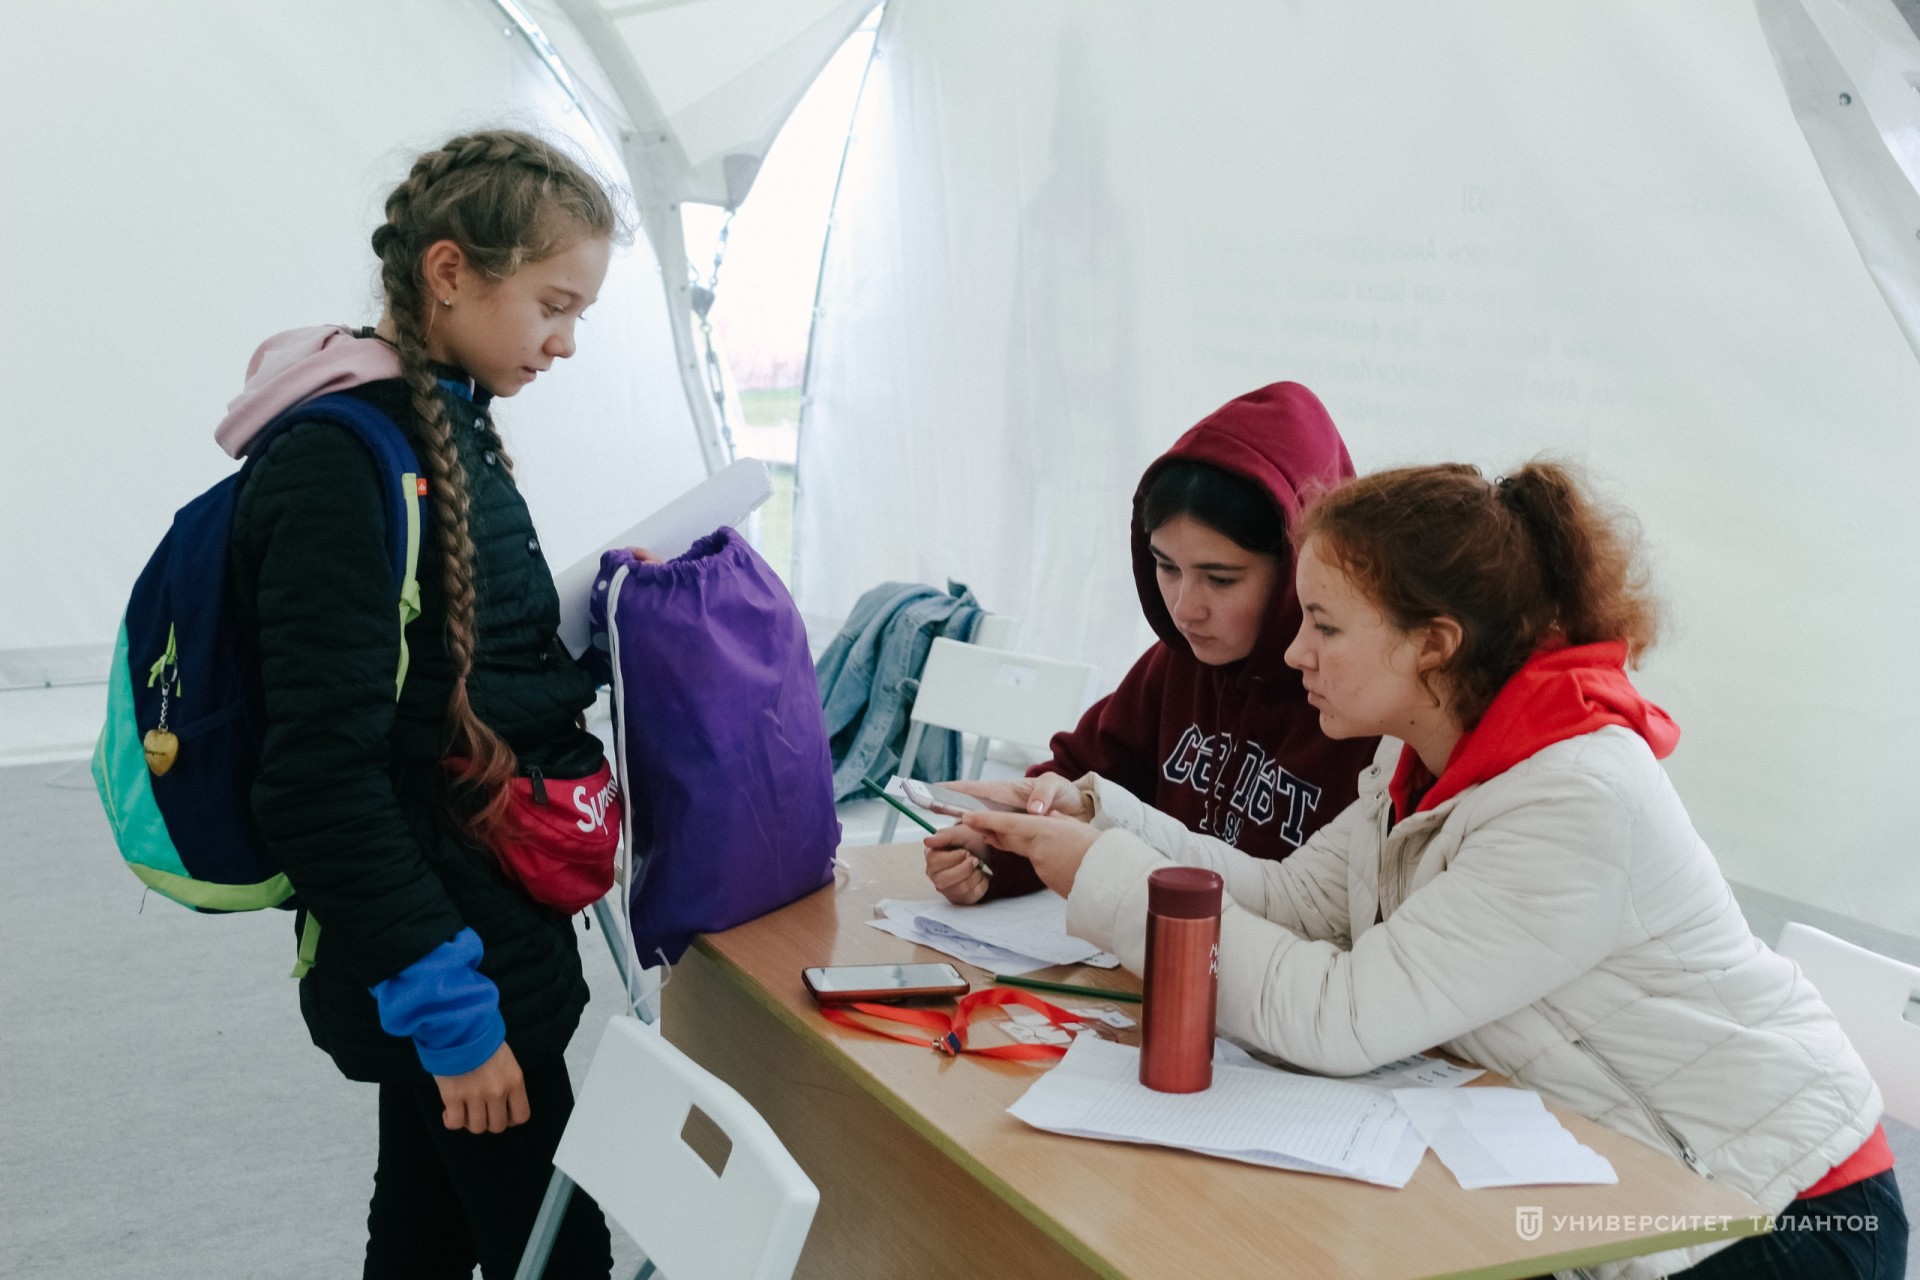 «Применяя свой потенциал, развиваю пространство вокруг себя»: молодежь Татарстана ищет решения реальных задач будущего